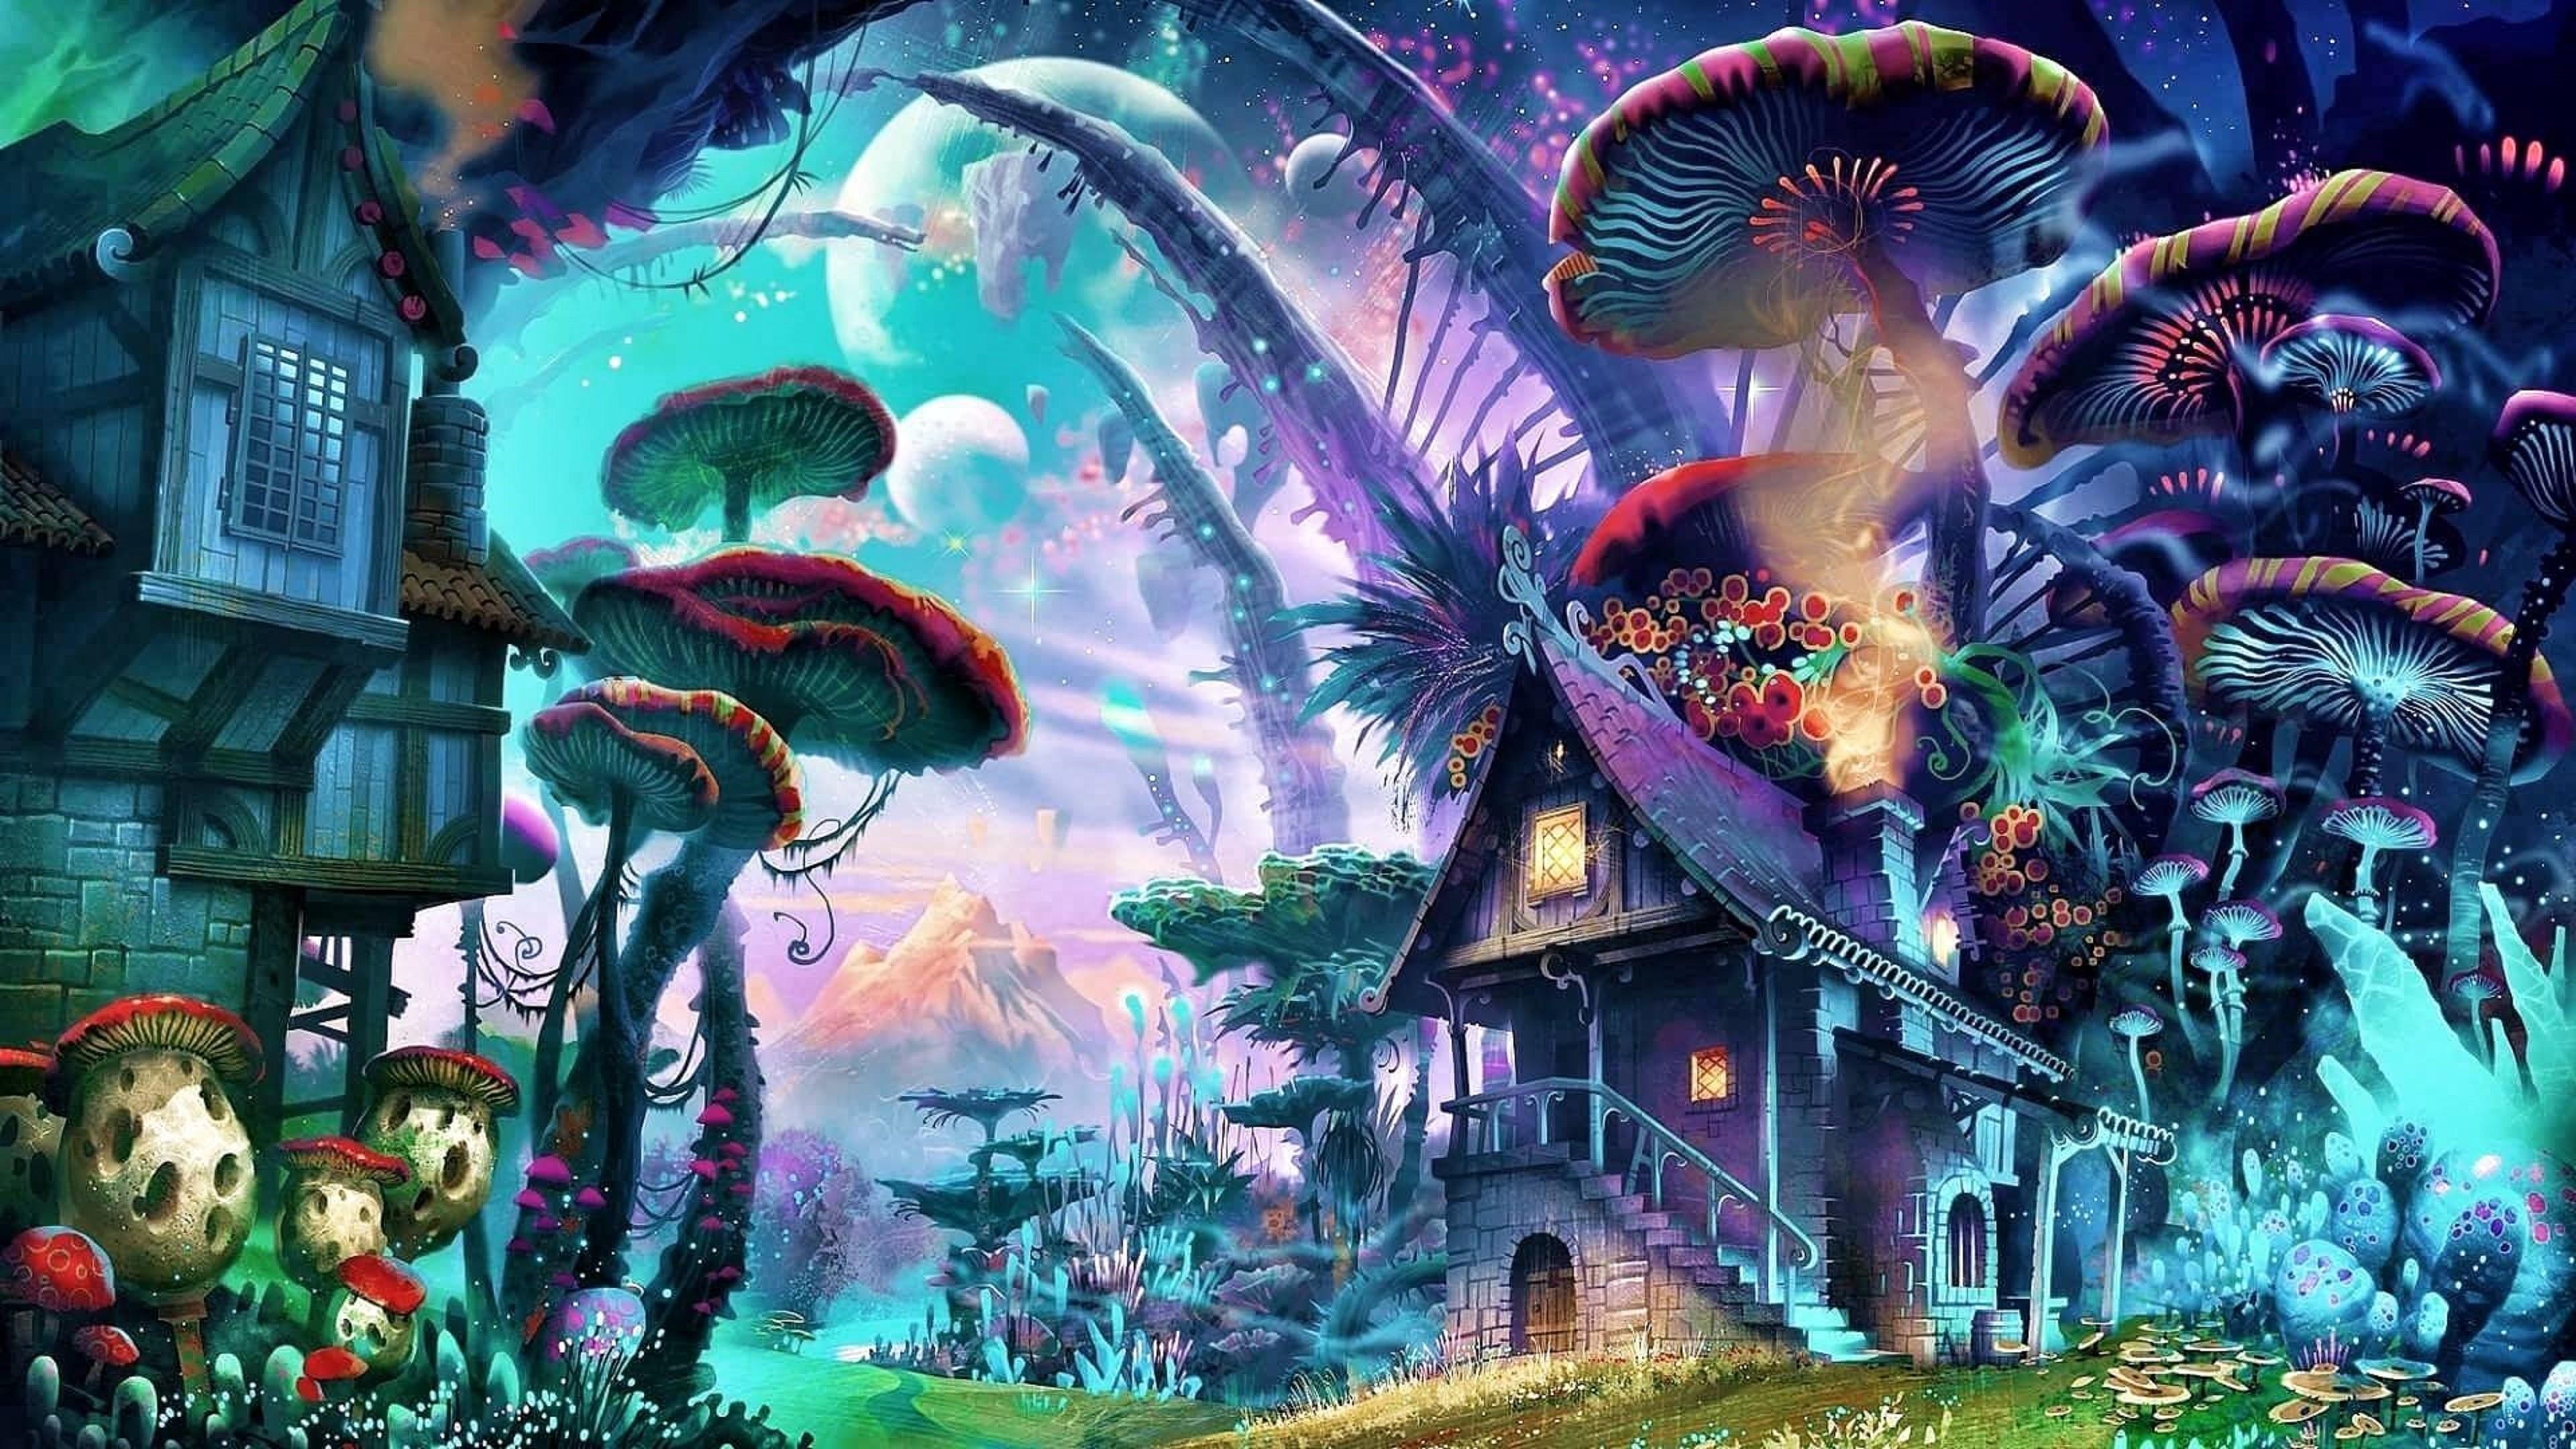 art #mushrooms #mushroom mushroom house #tree psychedelic art #graphics fantasy world fantasy. Fantasy art landscapes, Landscape wallpaper, Desktop wallpaper art